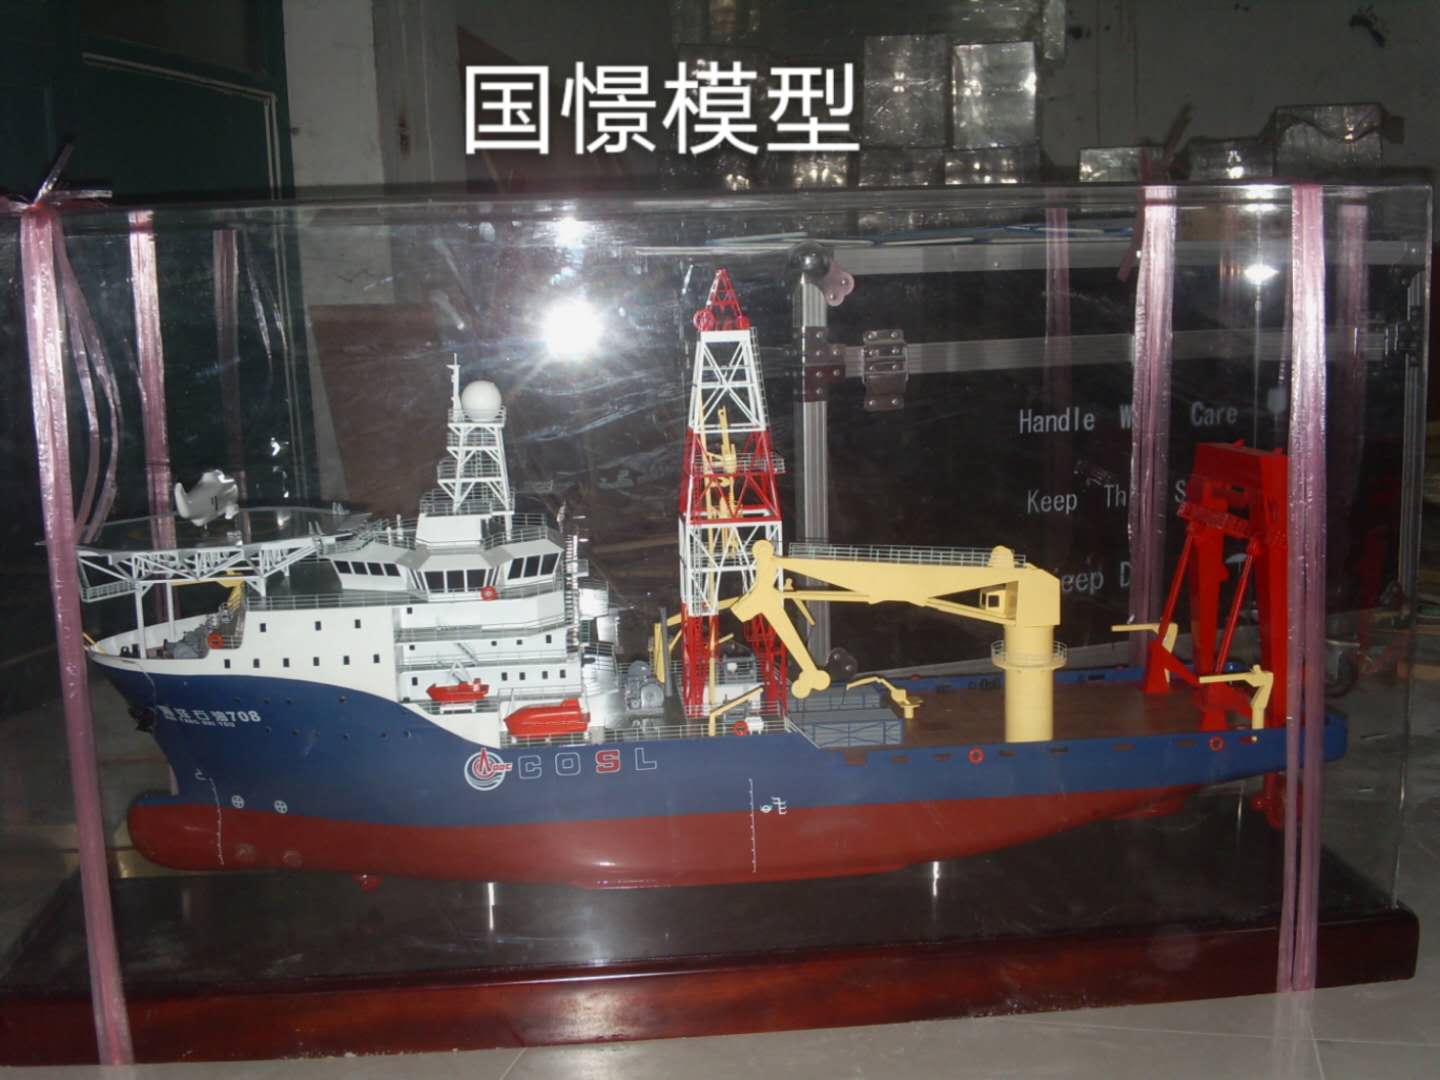 汝城县船舶模型